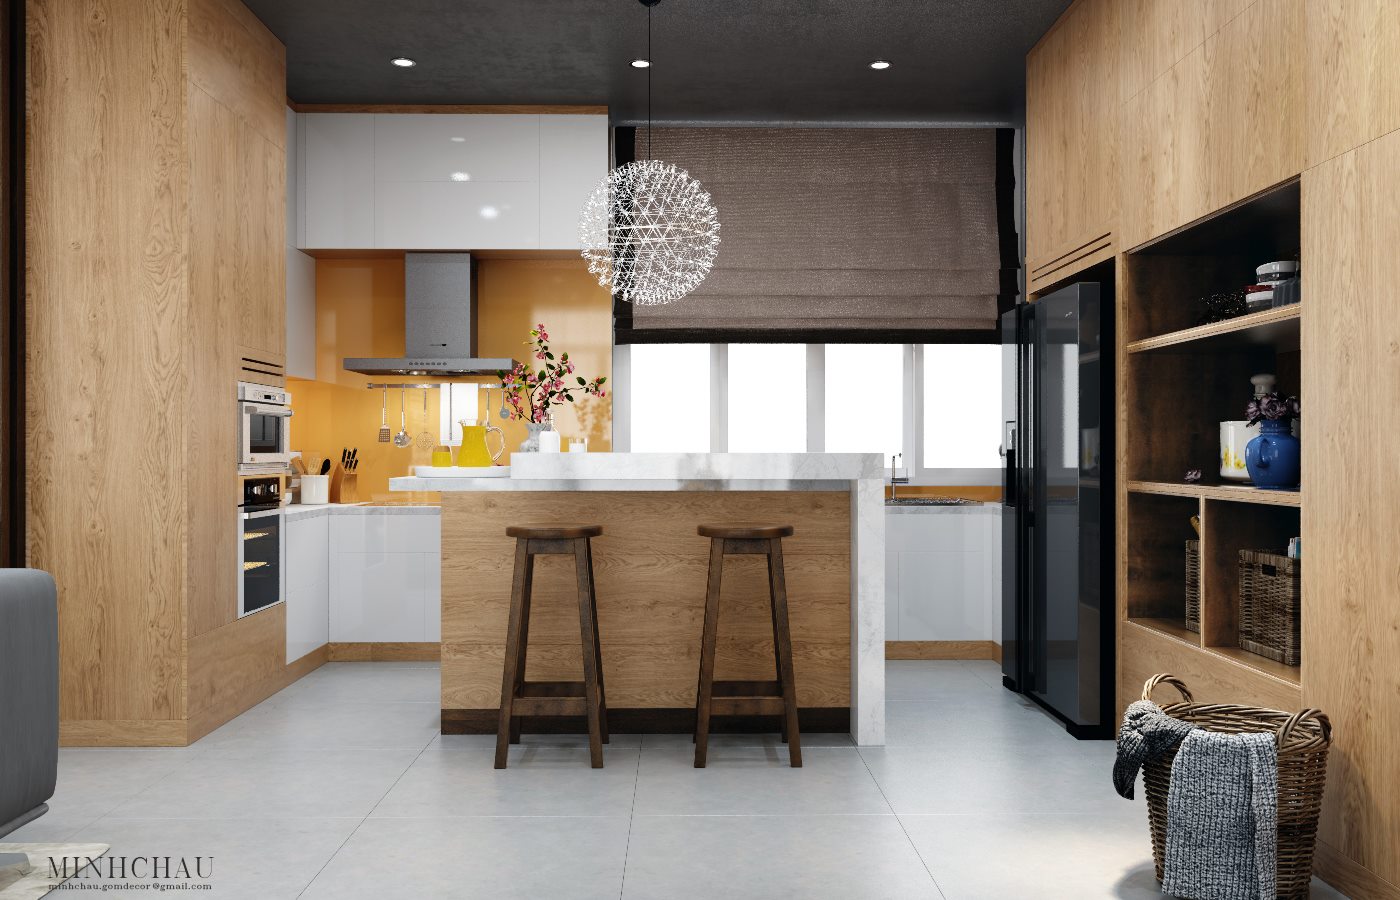 wooden kitchen design image